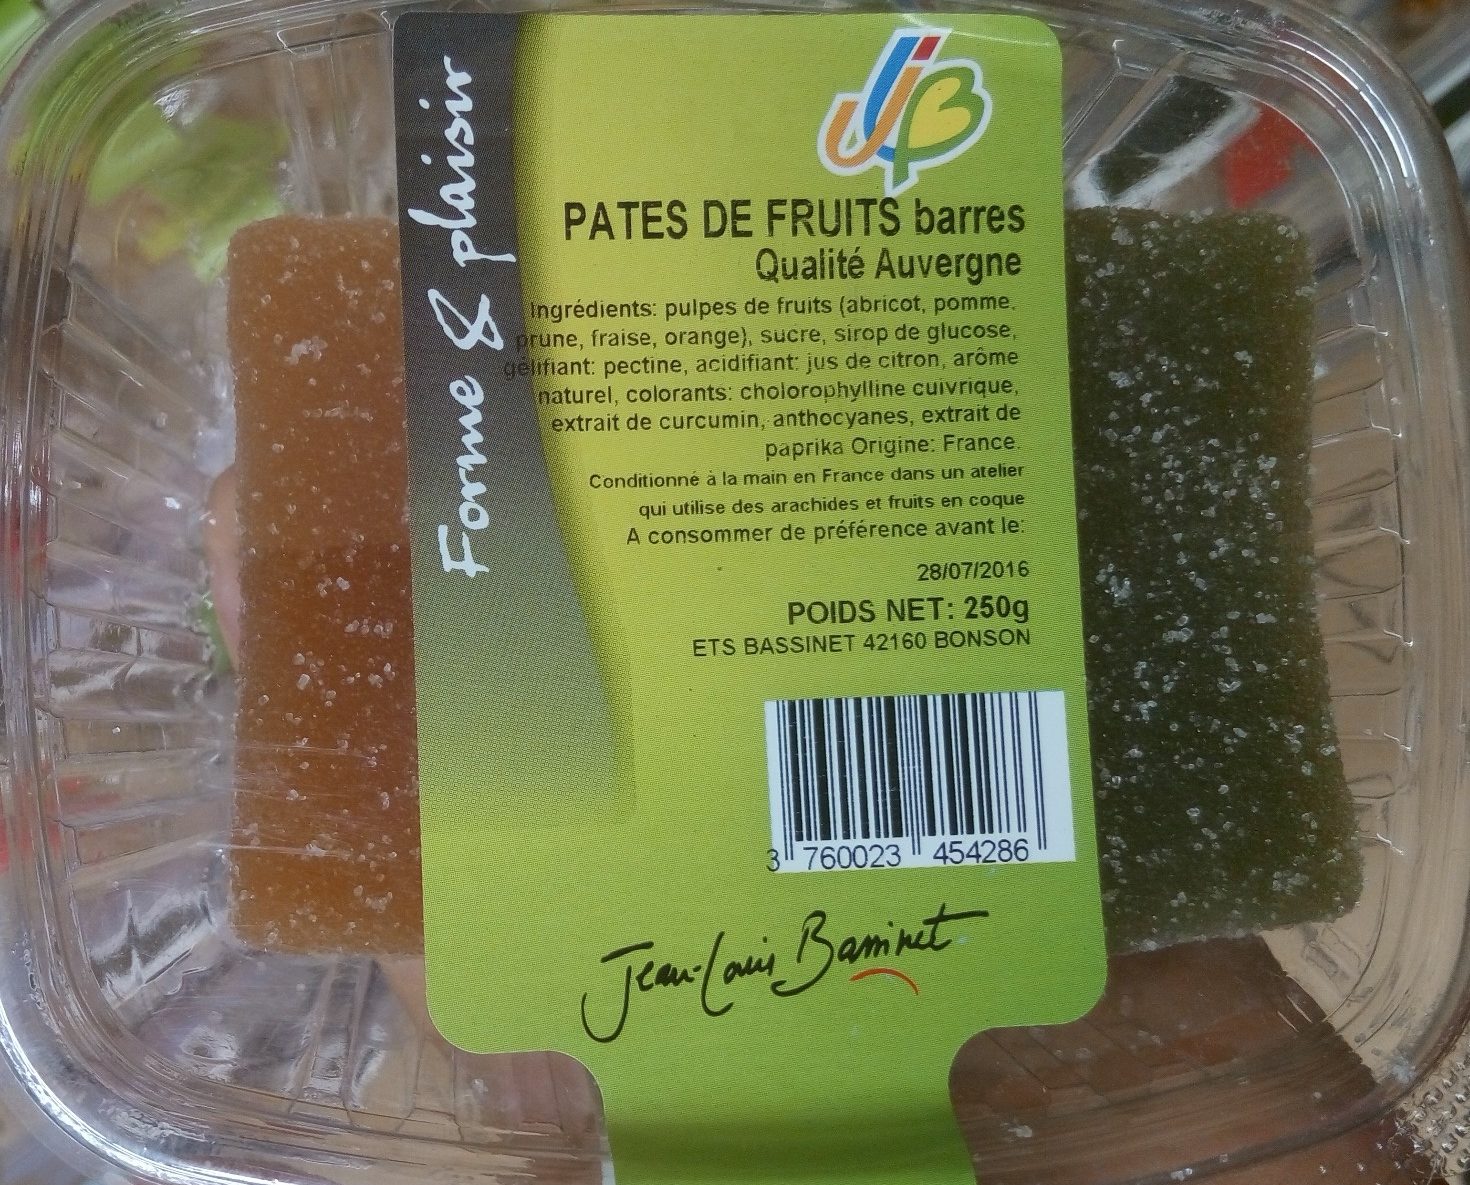 Pâtes de fruits barres qualité Auvergne - Product - fr